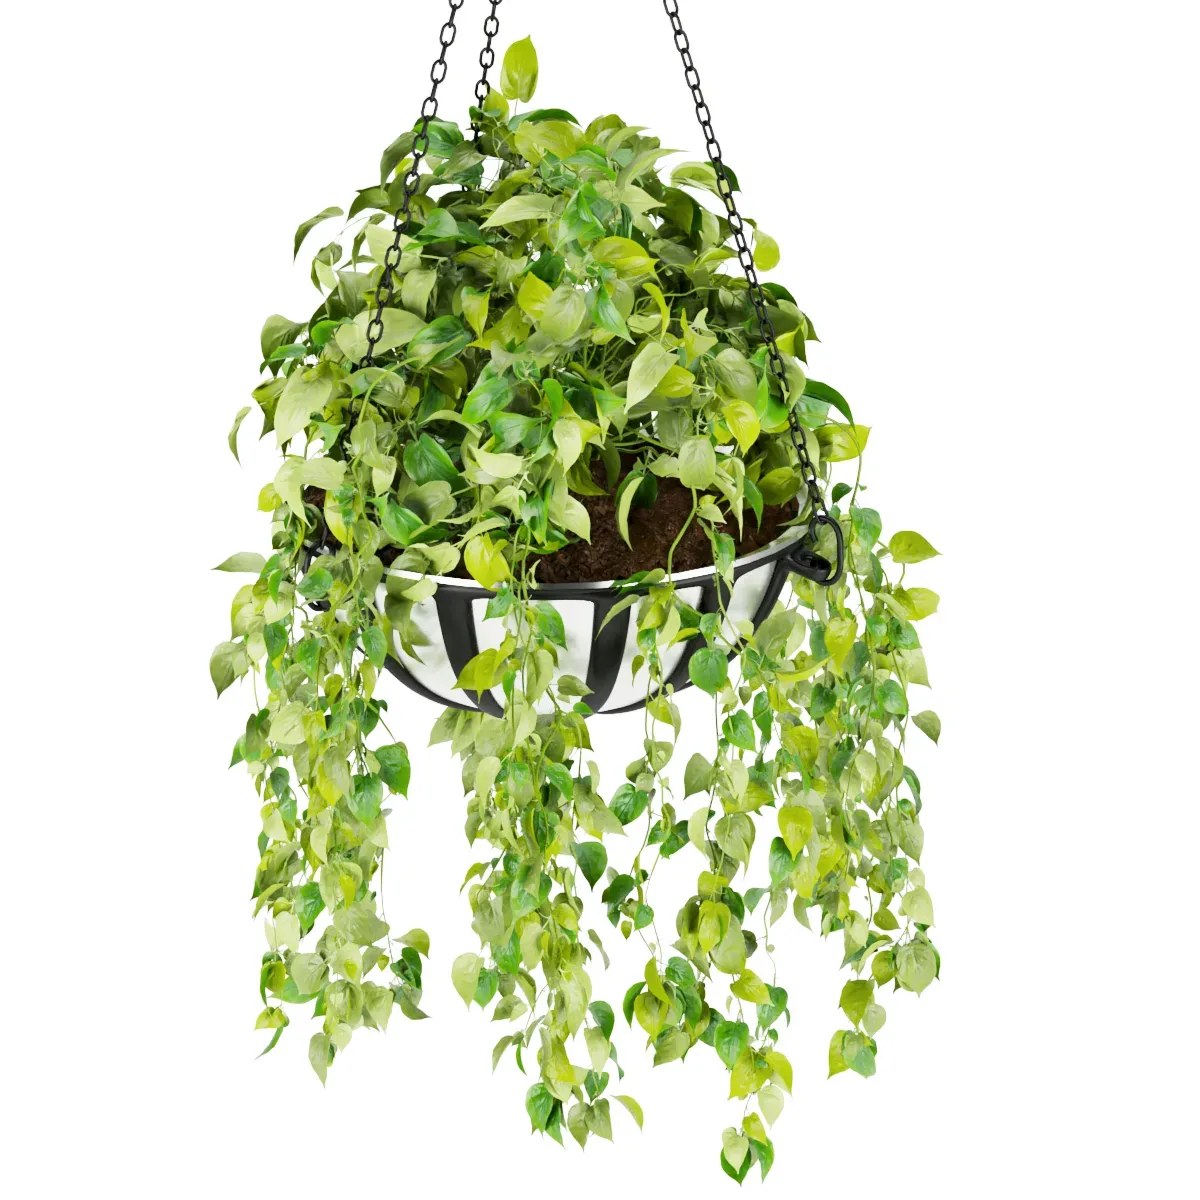 Collection plant vol 240 - leaf - grass - hanging - blender - 3dmax